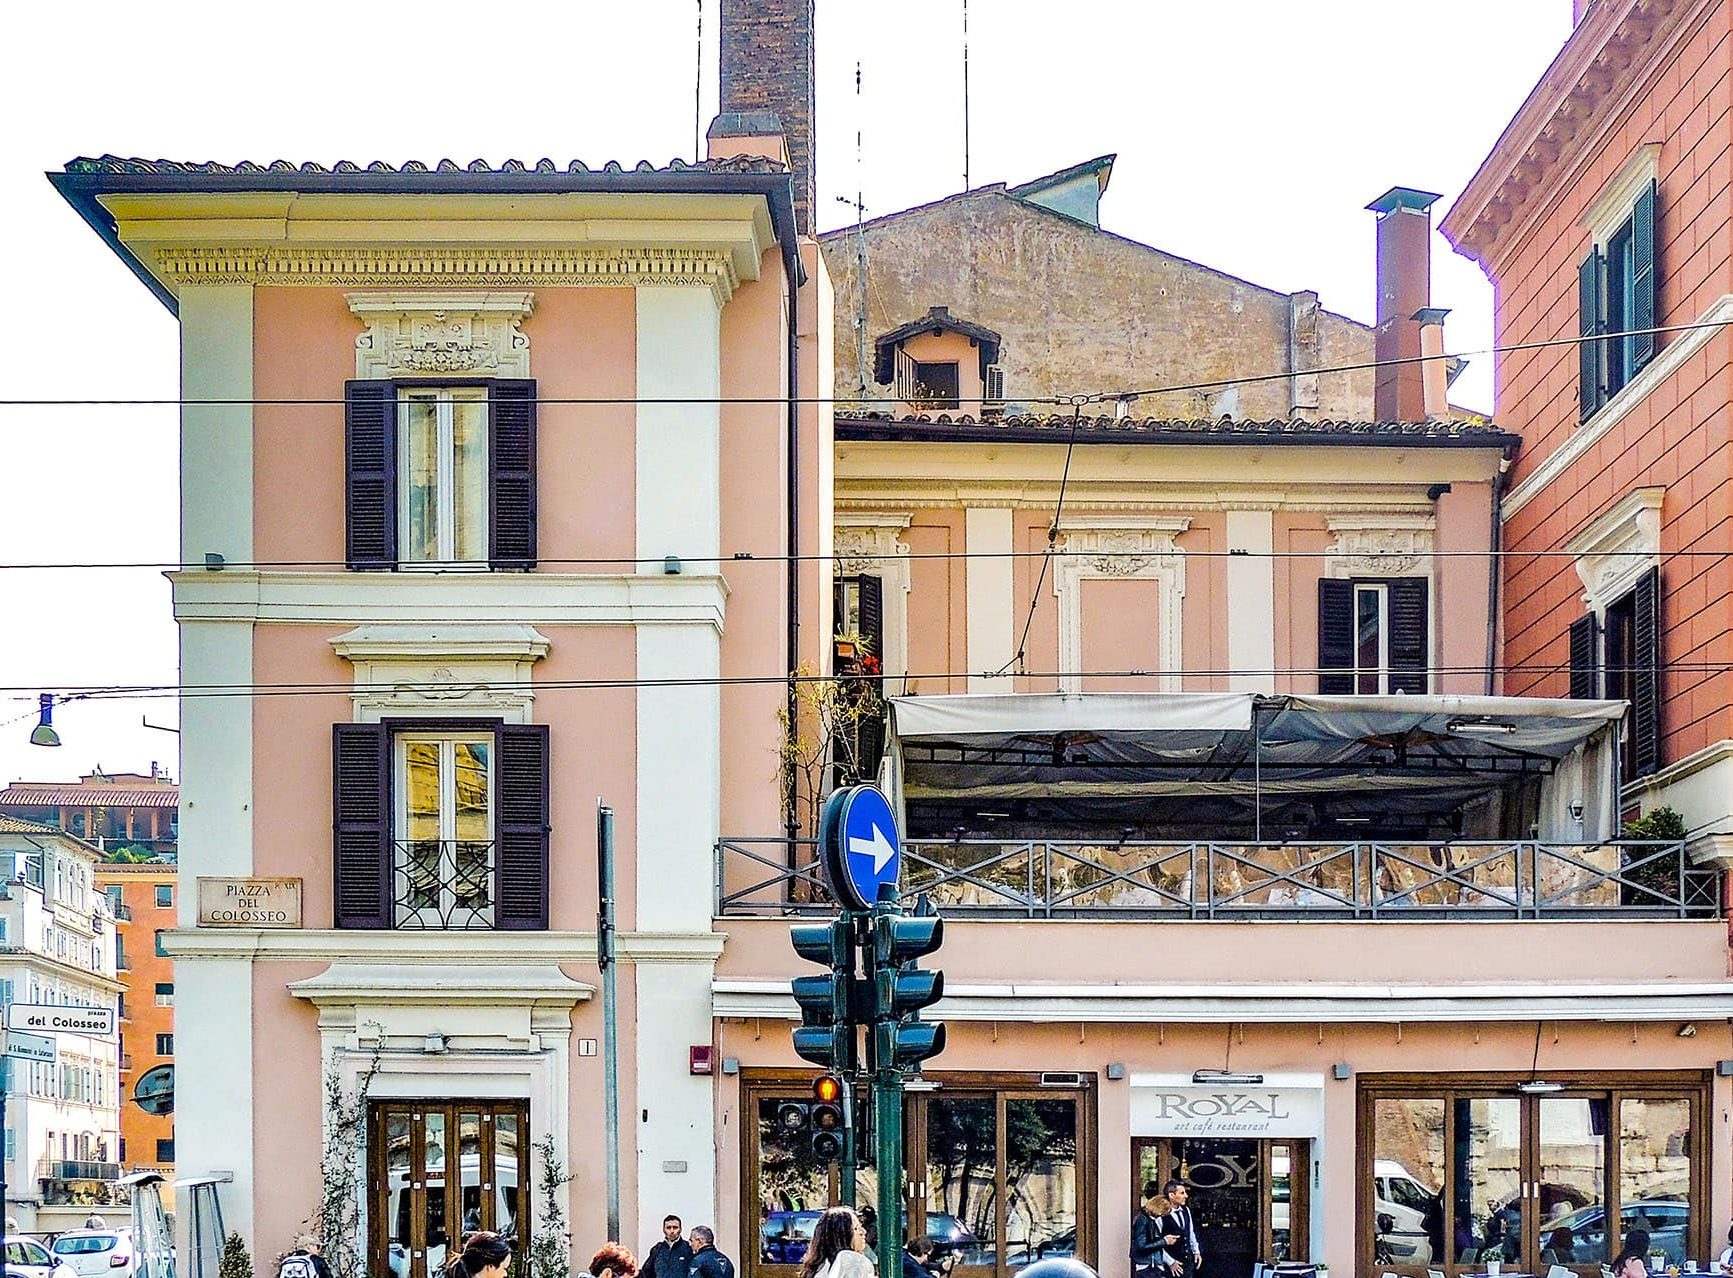 Via San Giovanni in Laterano, Piazza del Colosseo dopo il restauro